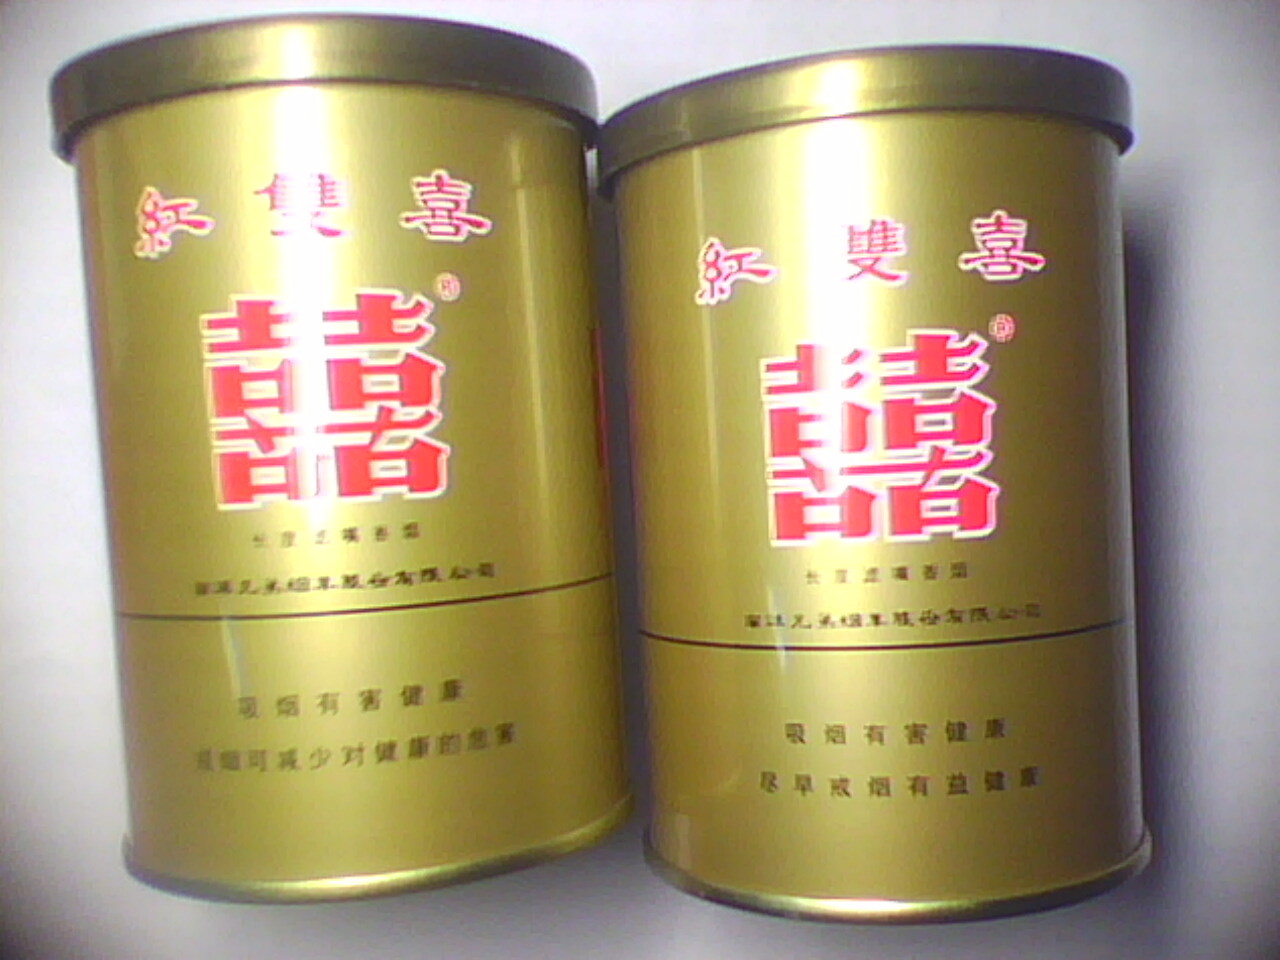 香港红双喜罐装,南洋双喜罐装价格表图 - 伤感说说吧